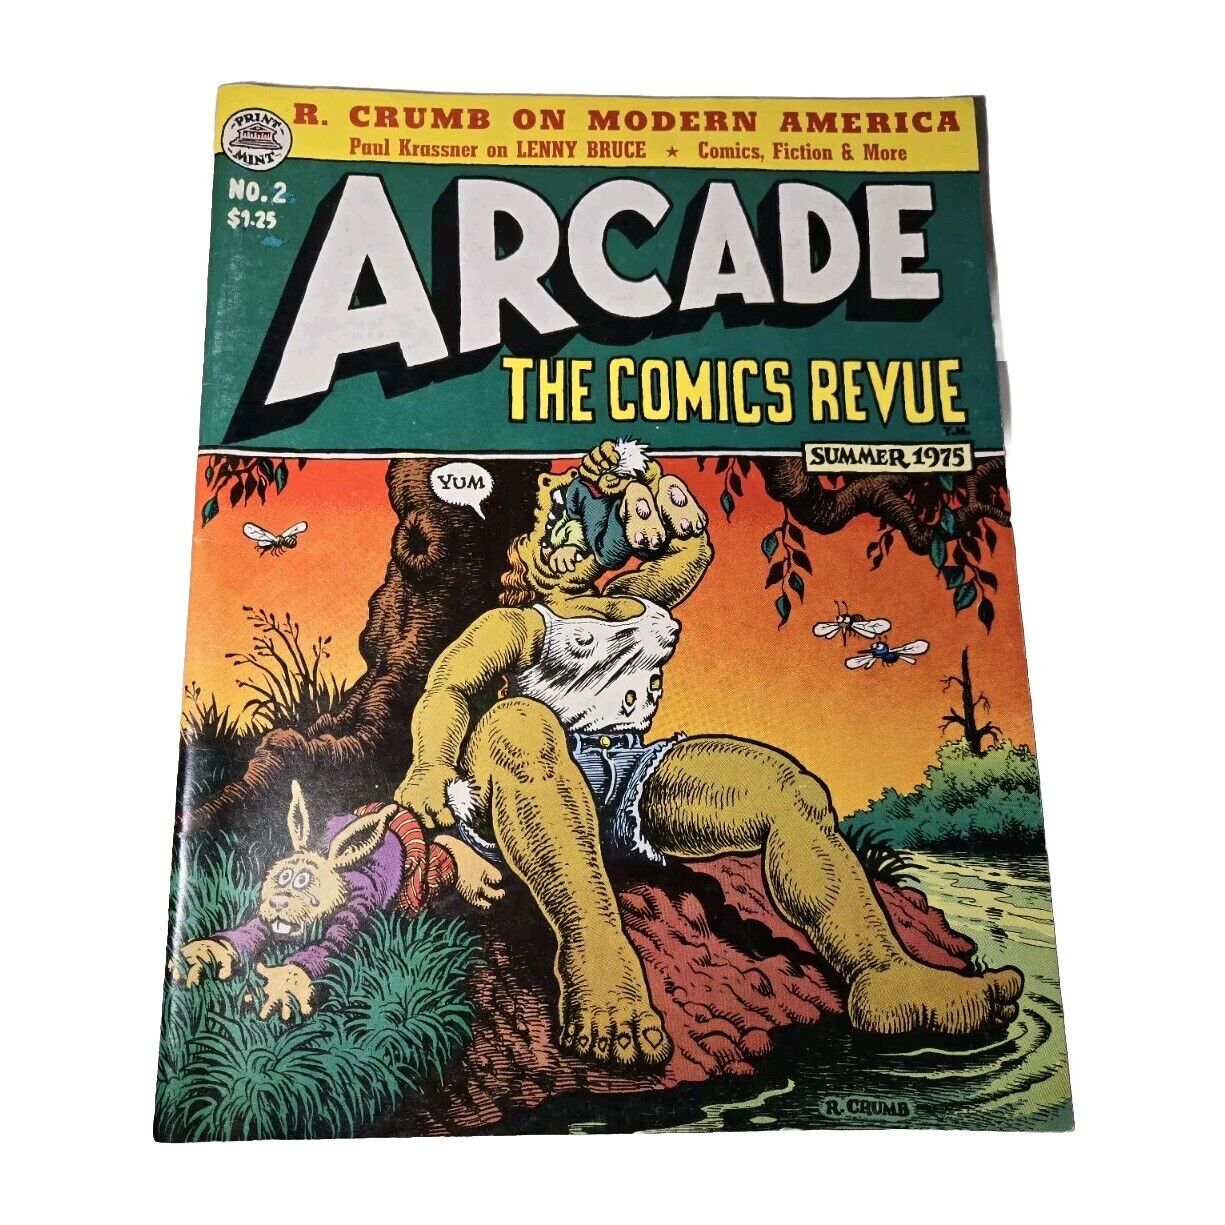 Arcade The Comics Revue - Summer 1975 Vol 1, No 2 - Vintage Robert Crumb Book